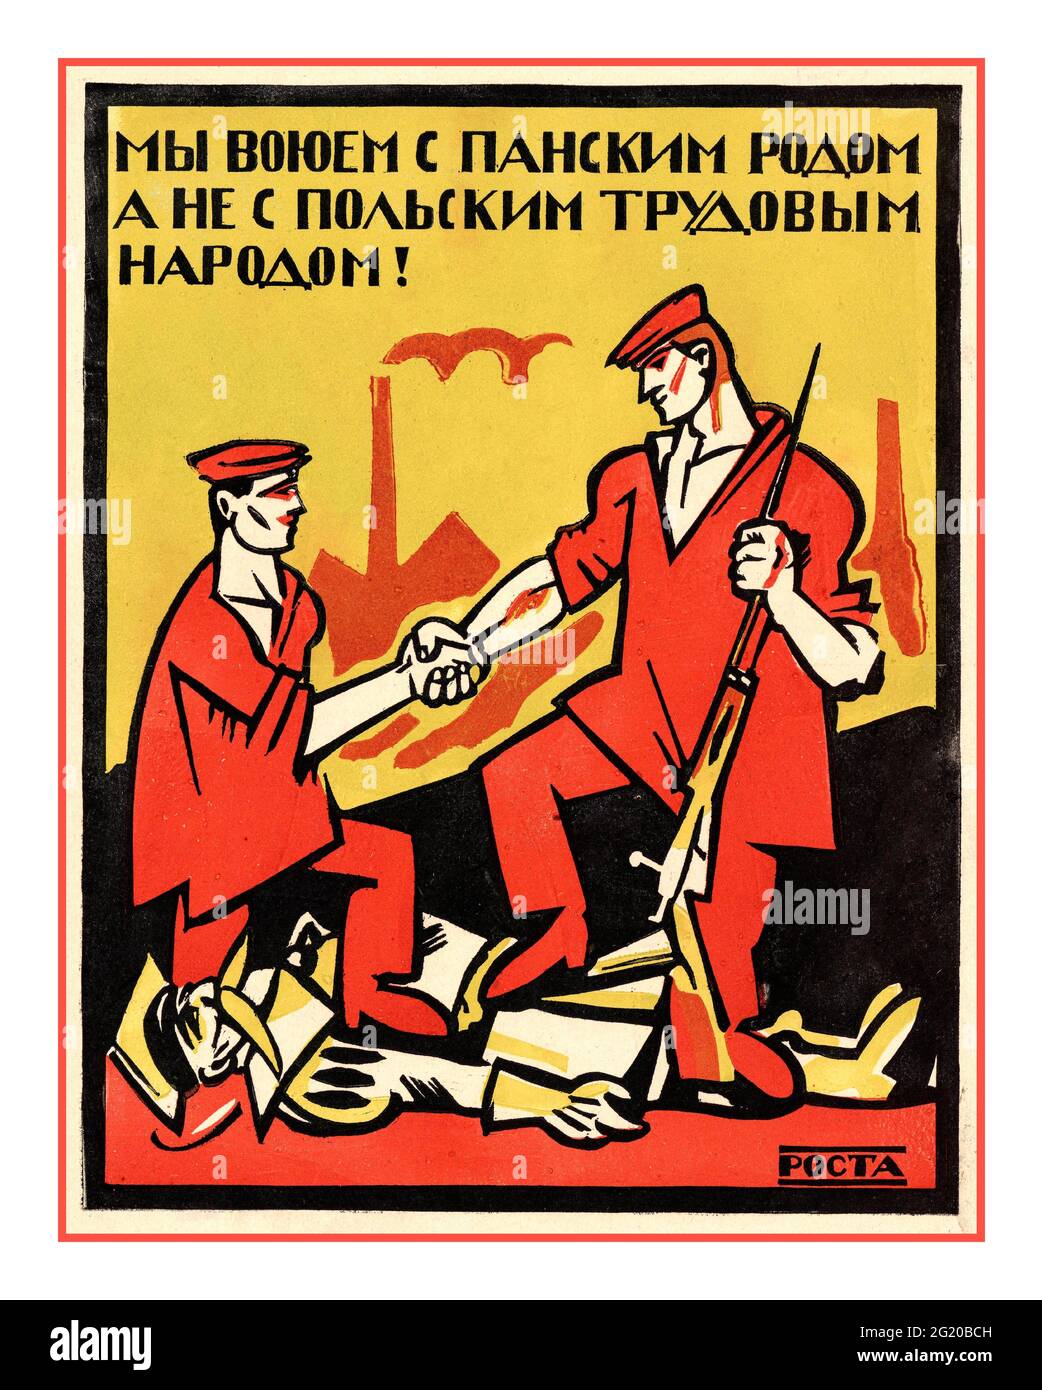 Propagande russe soviétique 1920: «nous sommes en guerre avec le clan du seigneur, pas avec les travailleurs polonais! ': [Affiche] / [V. V. Mayakovsky]; artiste [ET. A. Malyutine]. - [Moscou] : CROISSANCE, [1920]. - lithographie de couleur Banque D'Images